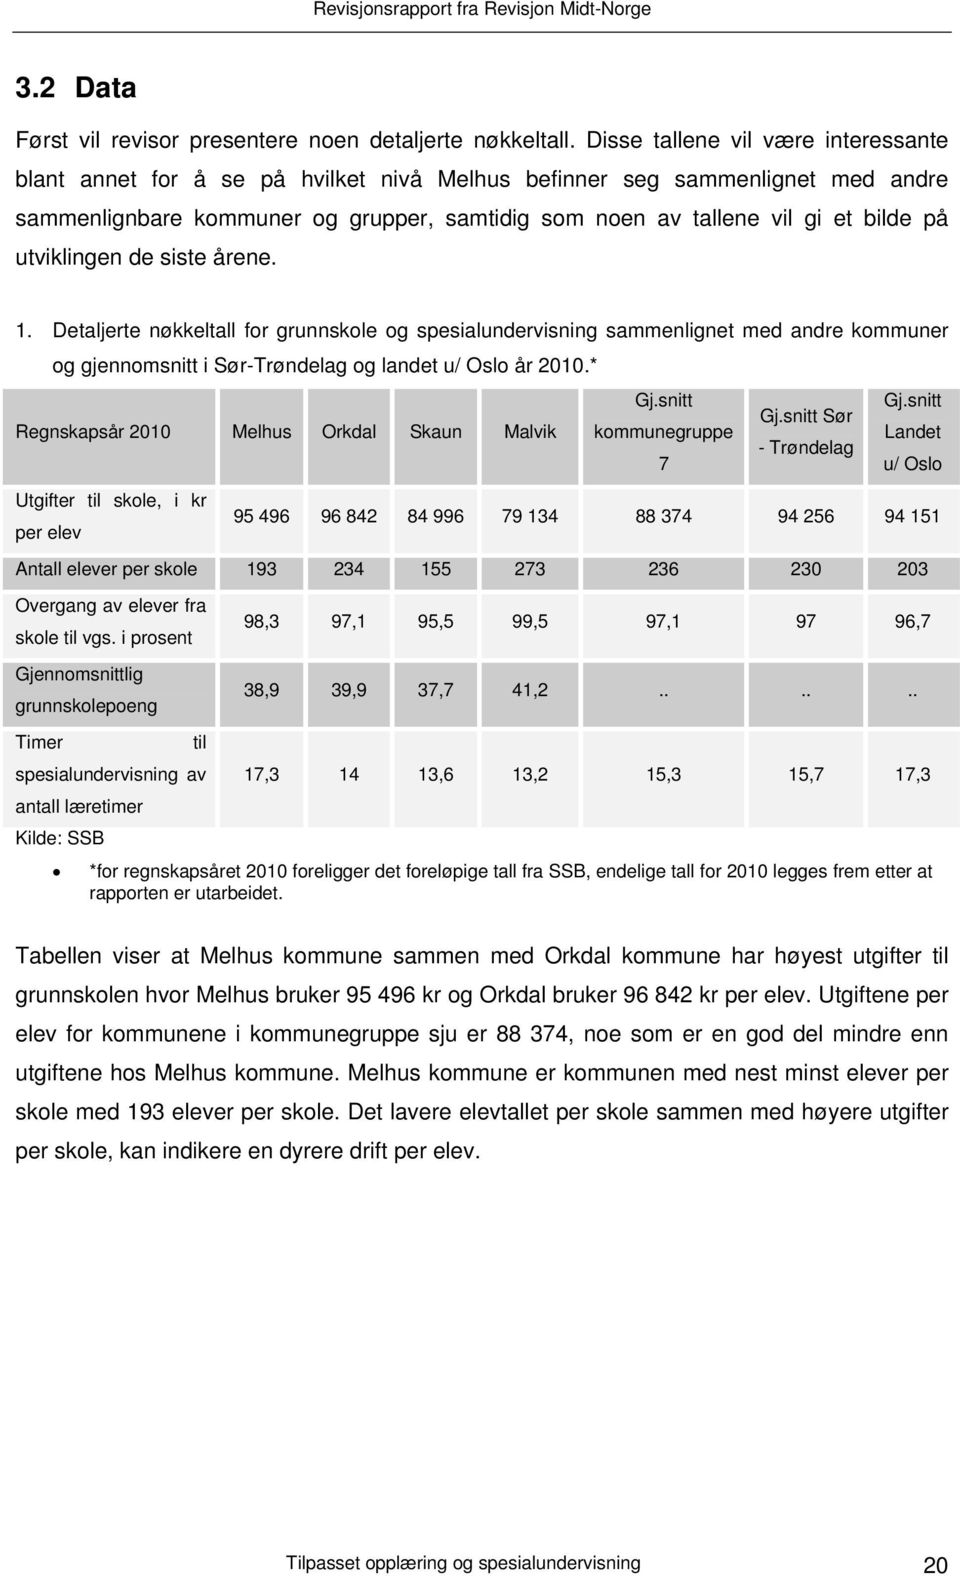 utviklingen de siste årene. 1. Detaljerte nøkkeltall for grunnskole og spesialundervisning sammenlignet med andre kommuner og gjennomsnitt i Sør-Trøndelag og landet u/ Oslo år 2010.* Gj.snitt Gj.